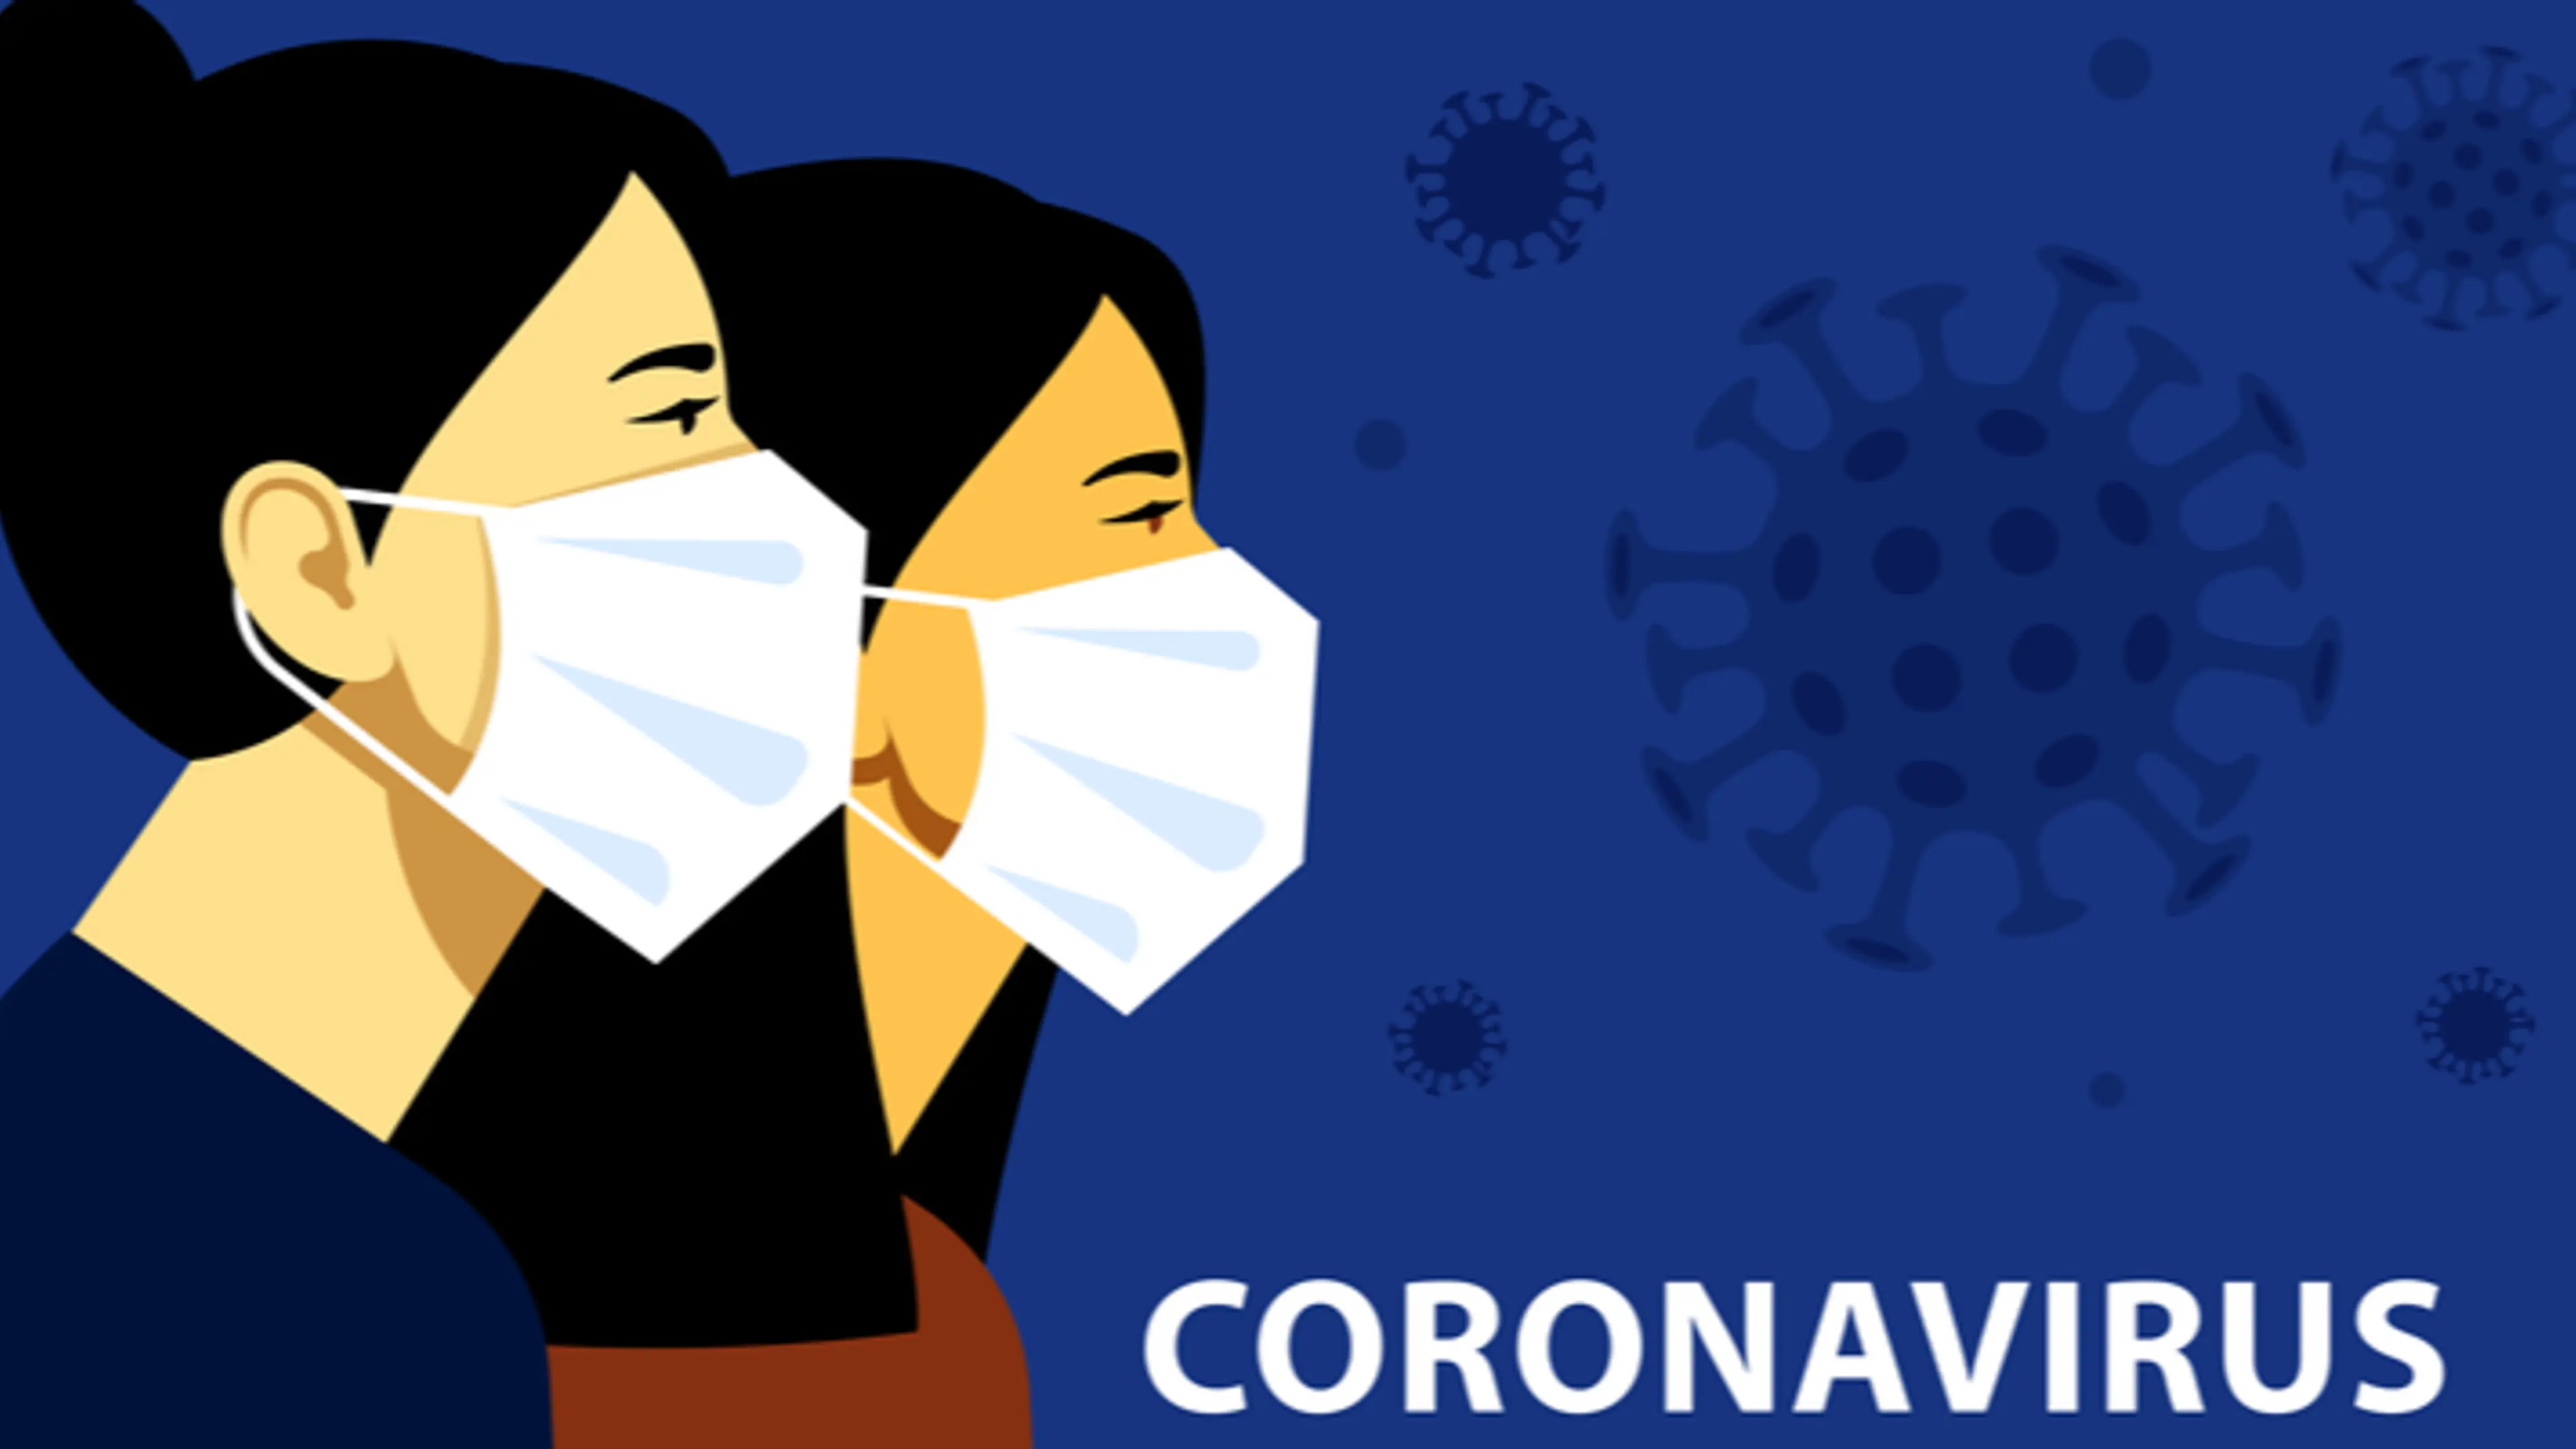 पूरी दुनिया में कोरोना वायरस संक्रमण के मामले ढाई करोड़ के पार, देश में कोरोना के मामले 35 लाख से अधिक